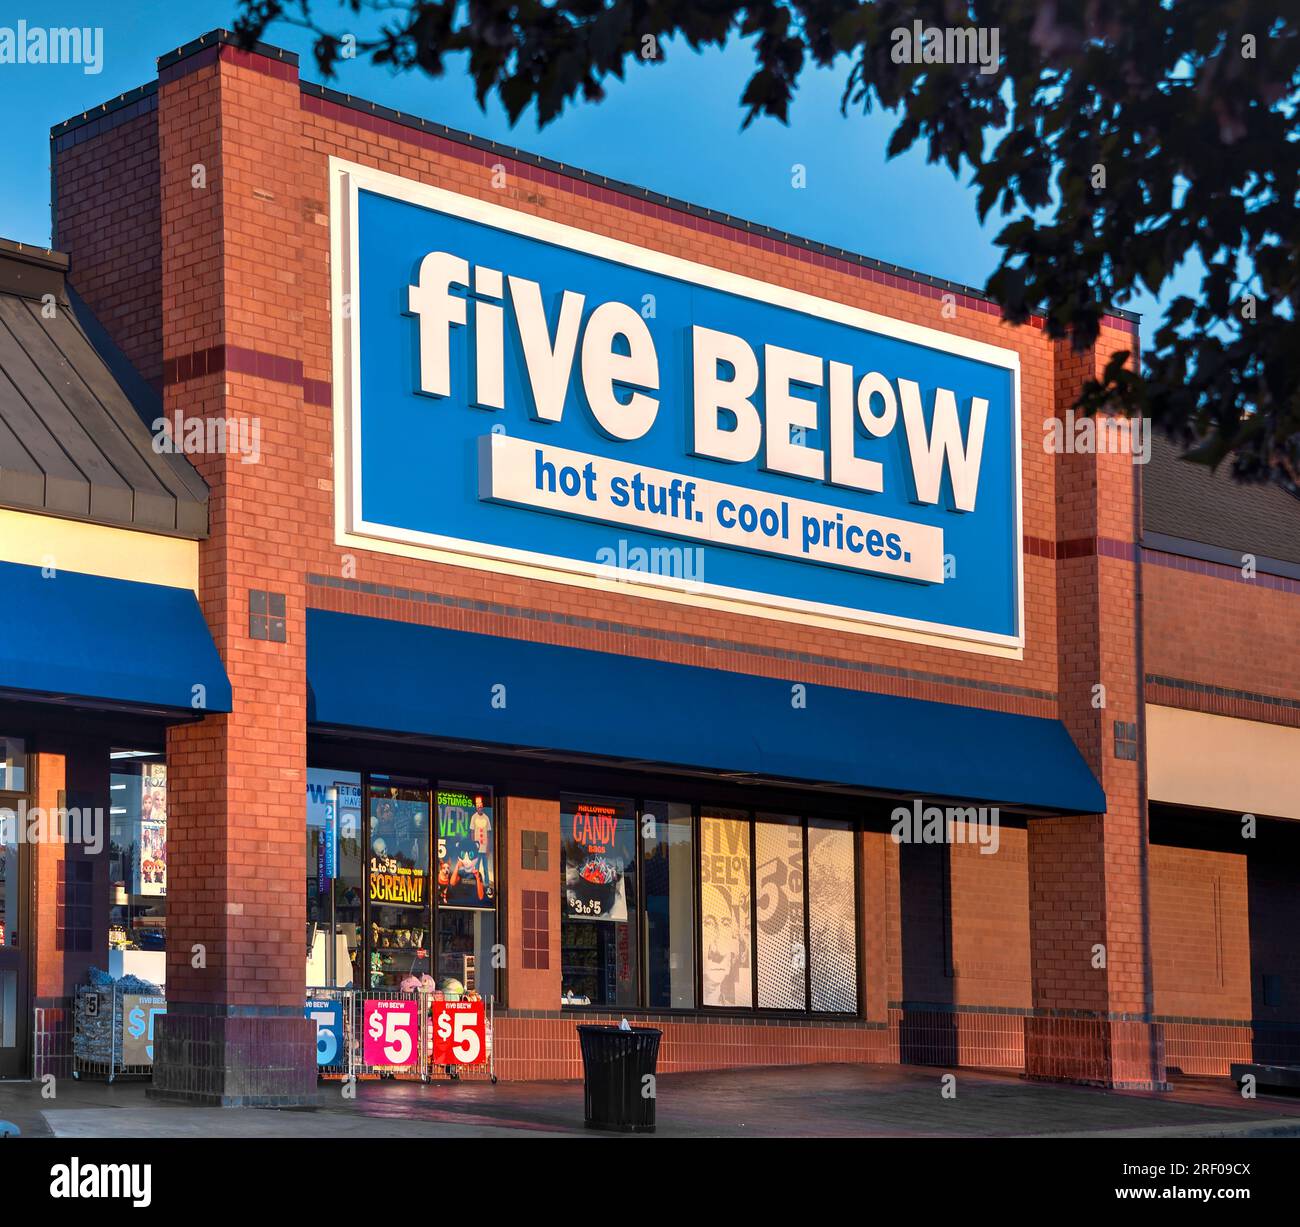 Springfield, Missouri - 1 novembre 2019 : Five Below Inc. Est une chaîne américaine de magasins de rabais vendant des produits jusqu'à 10 $. Banque D'Images